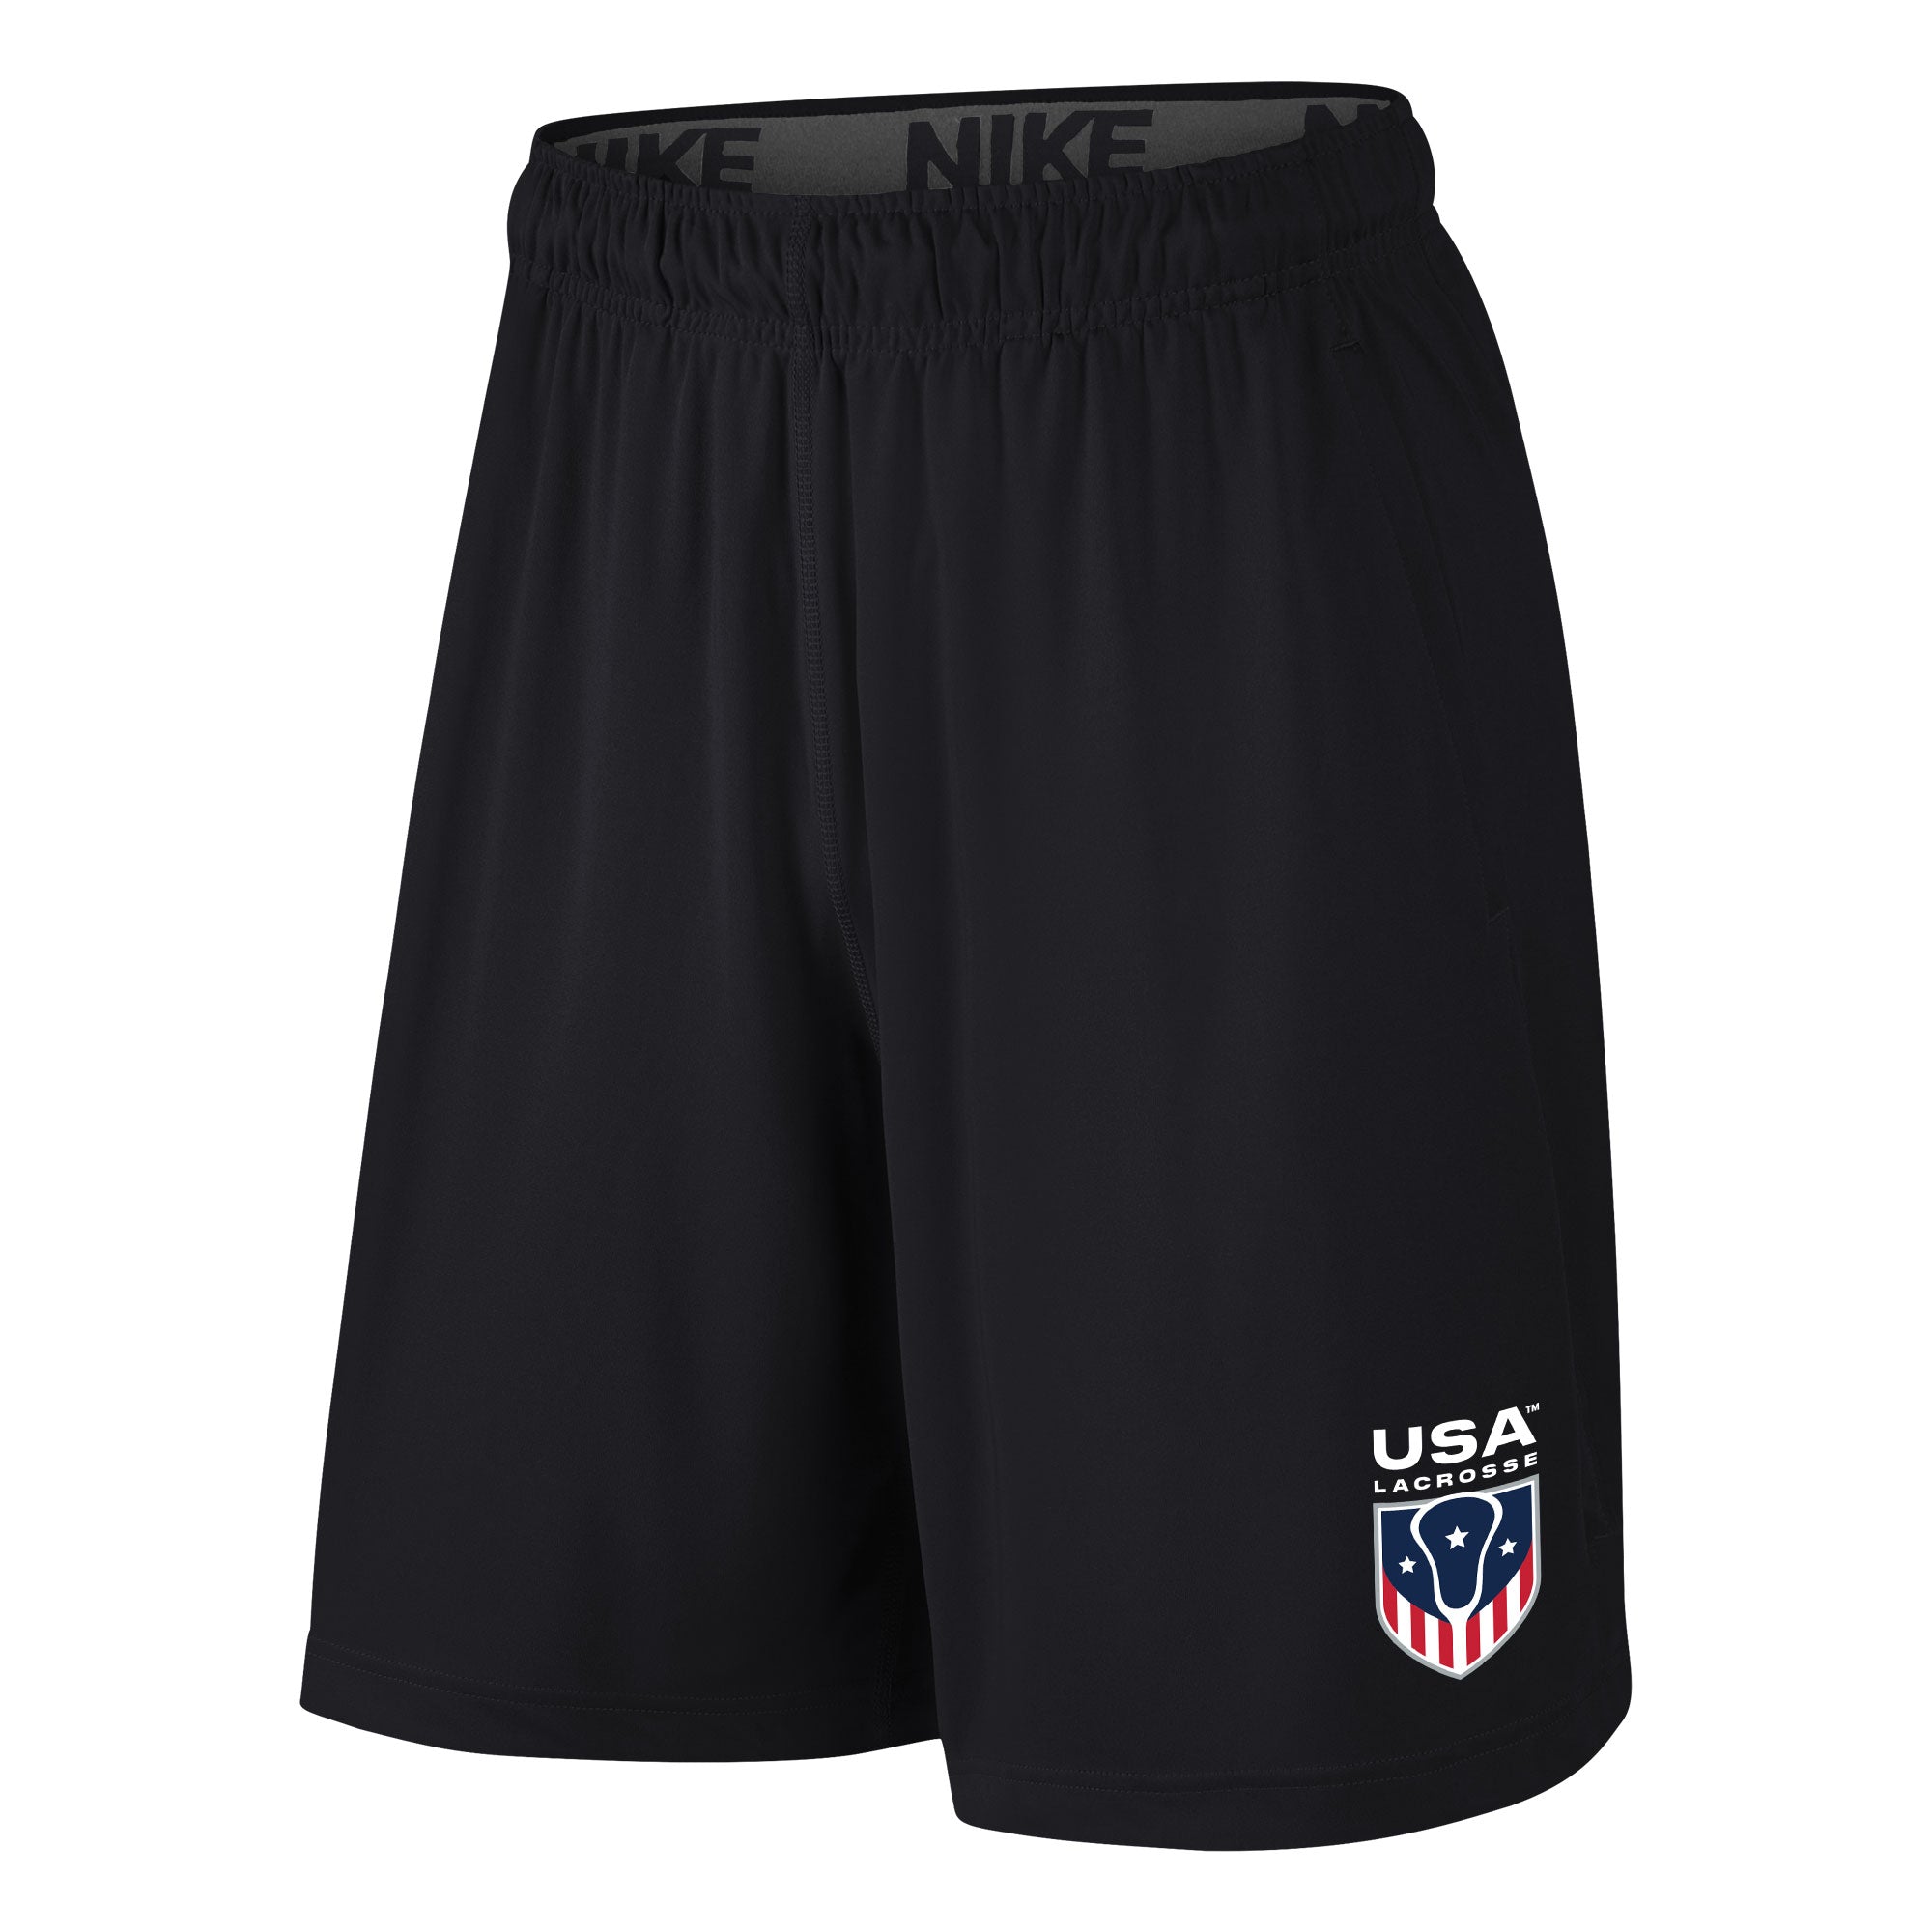 Youth USA Lacrosse Nike Fly Shorts